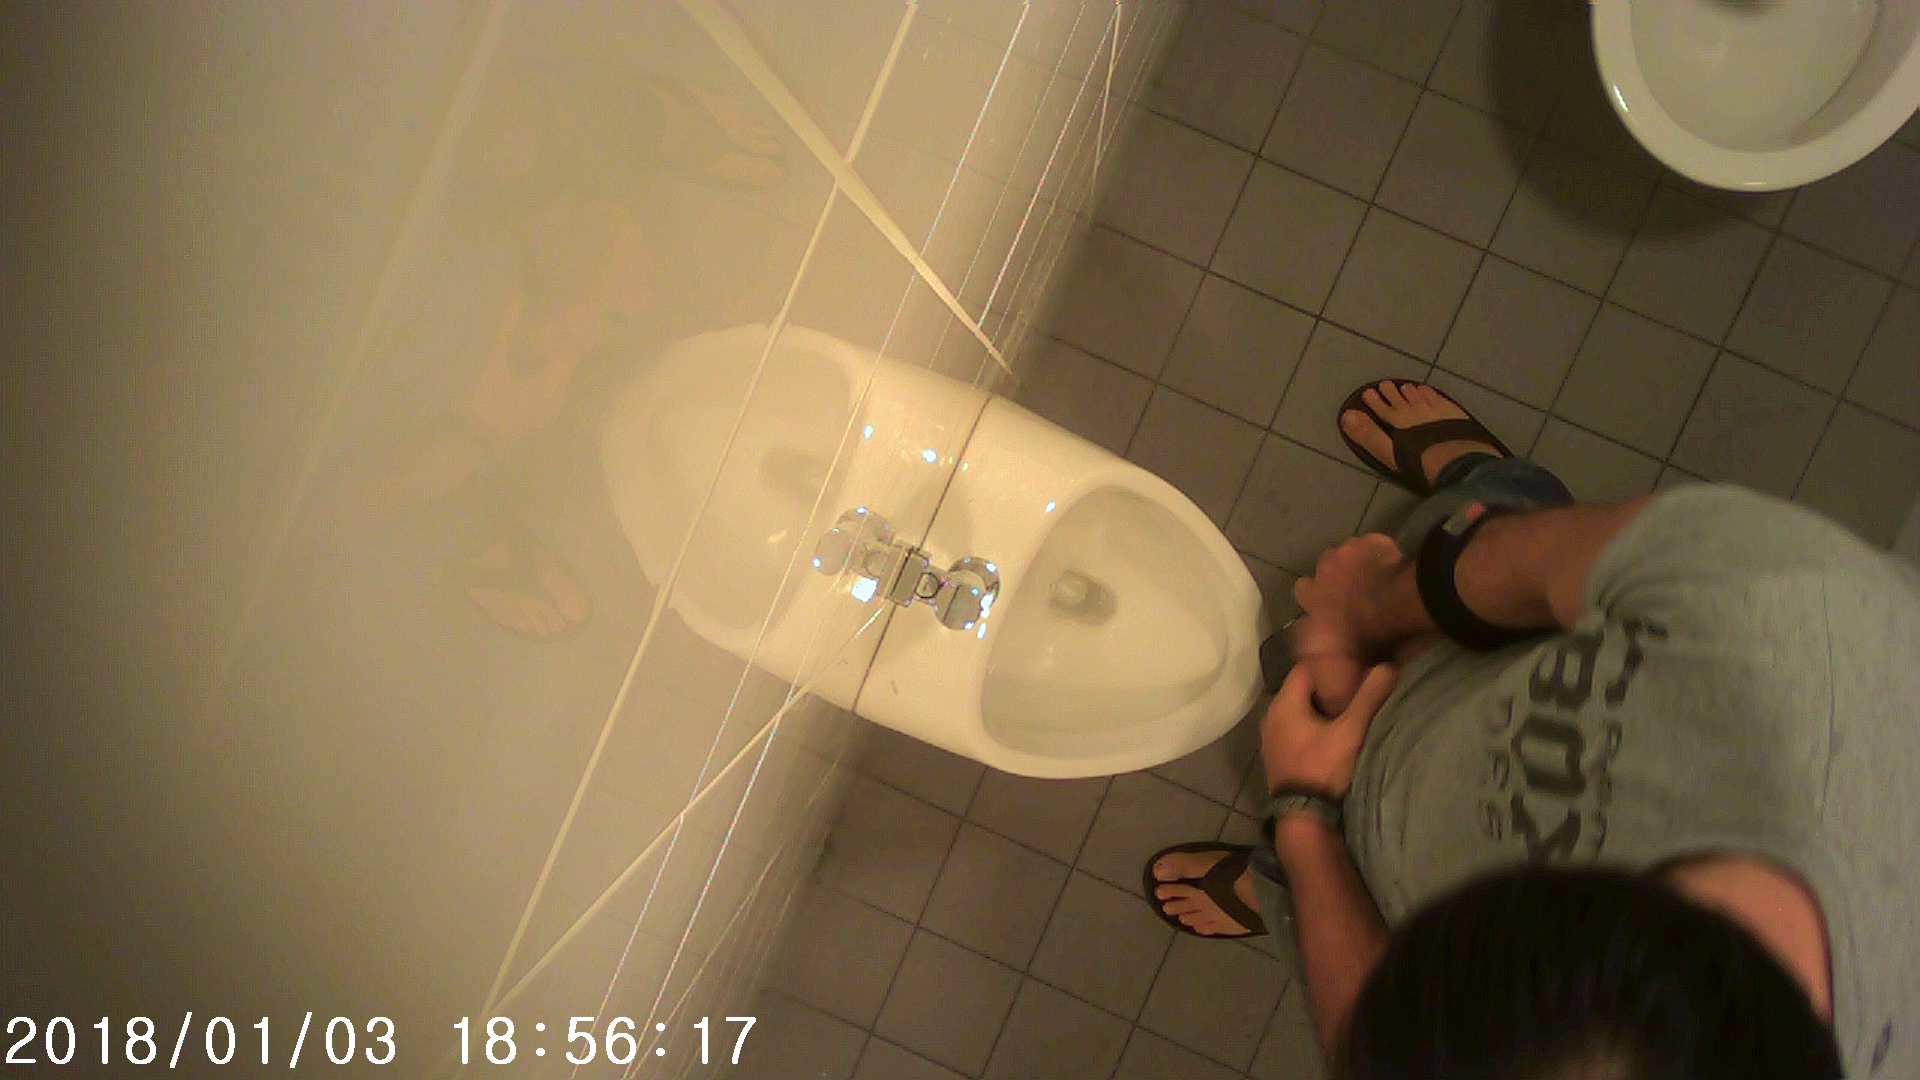 Toilet spying 1